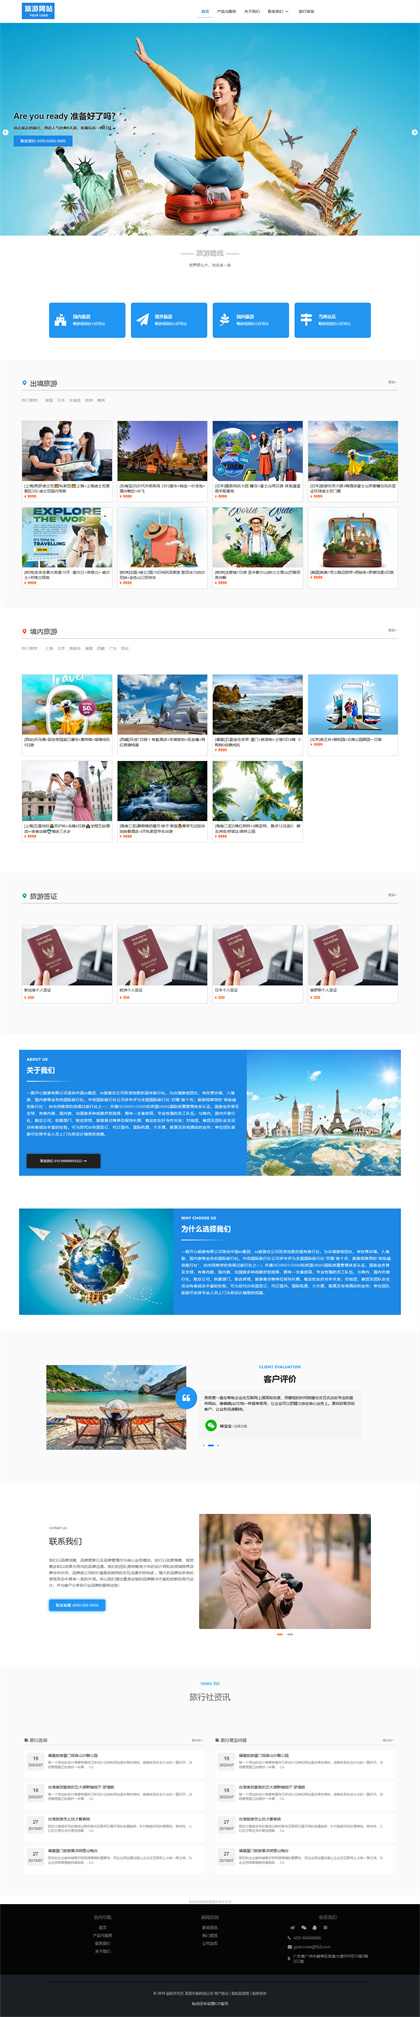 旅行社-旅游公司-旅行团-出境游公司-网站模板网站模板图片